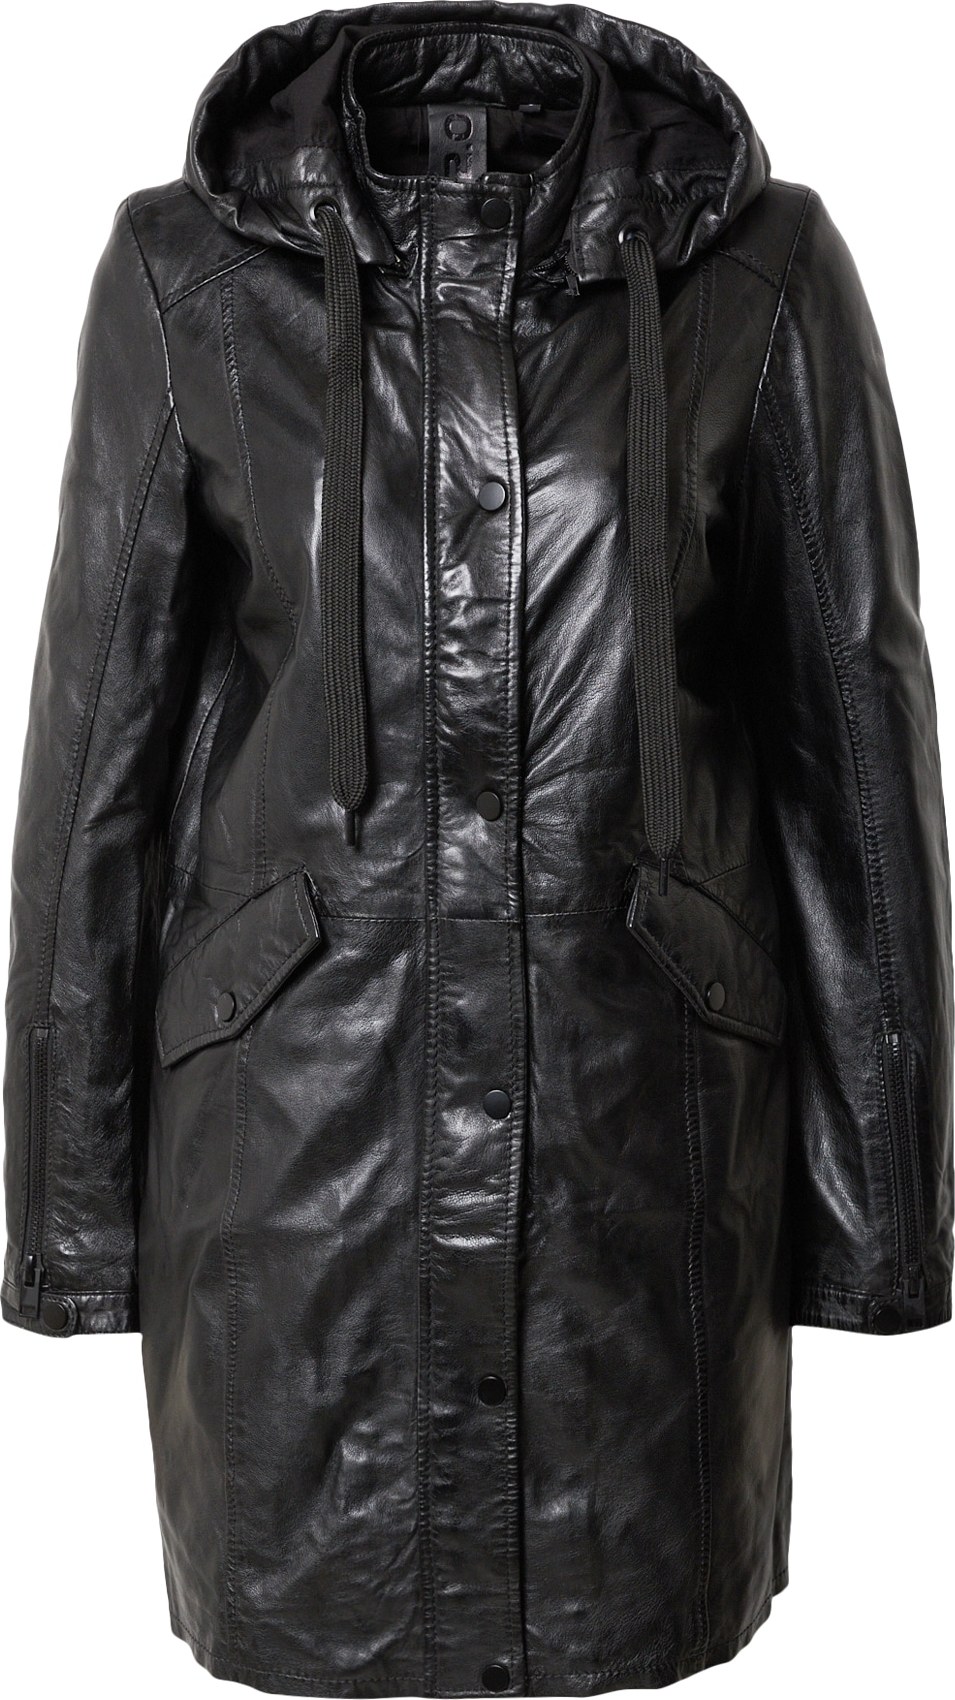 Přechodný kabát 'Varya' gipsy černá